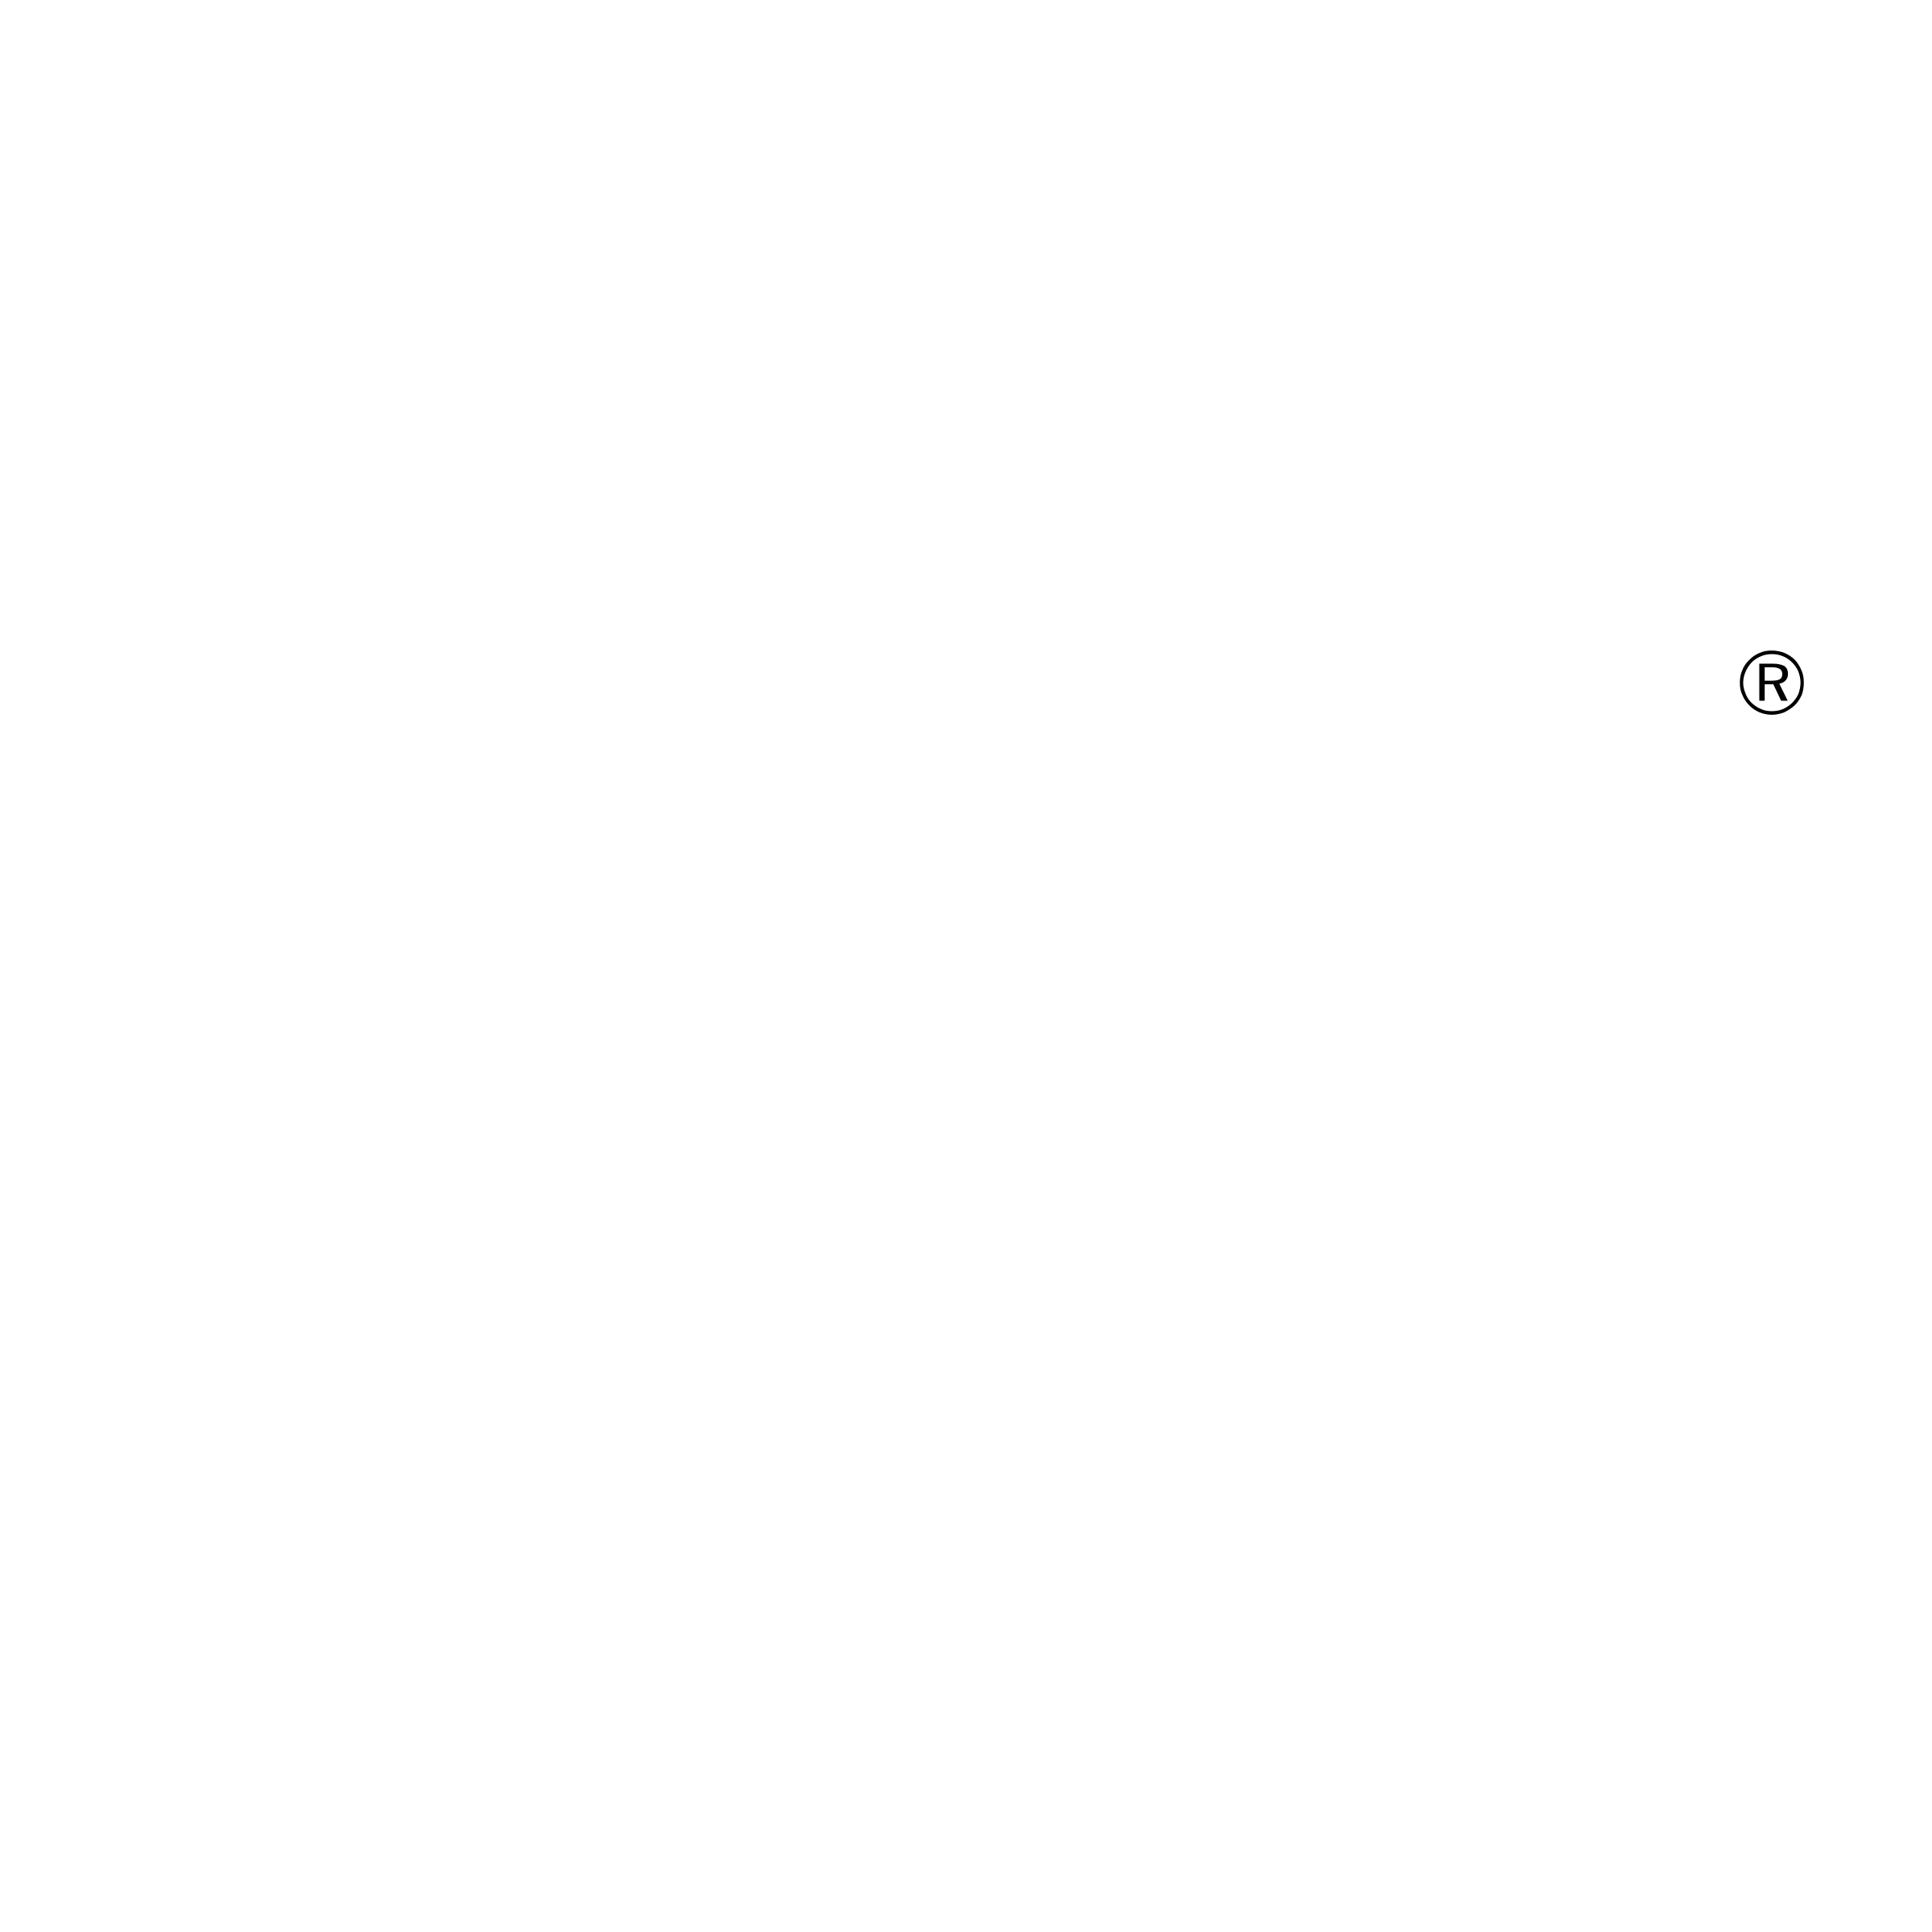 TRENDnet Logo - TRENDnet Logo PNG Transparent & SVG Vector - Freebie Supply